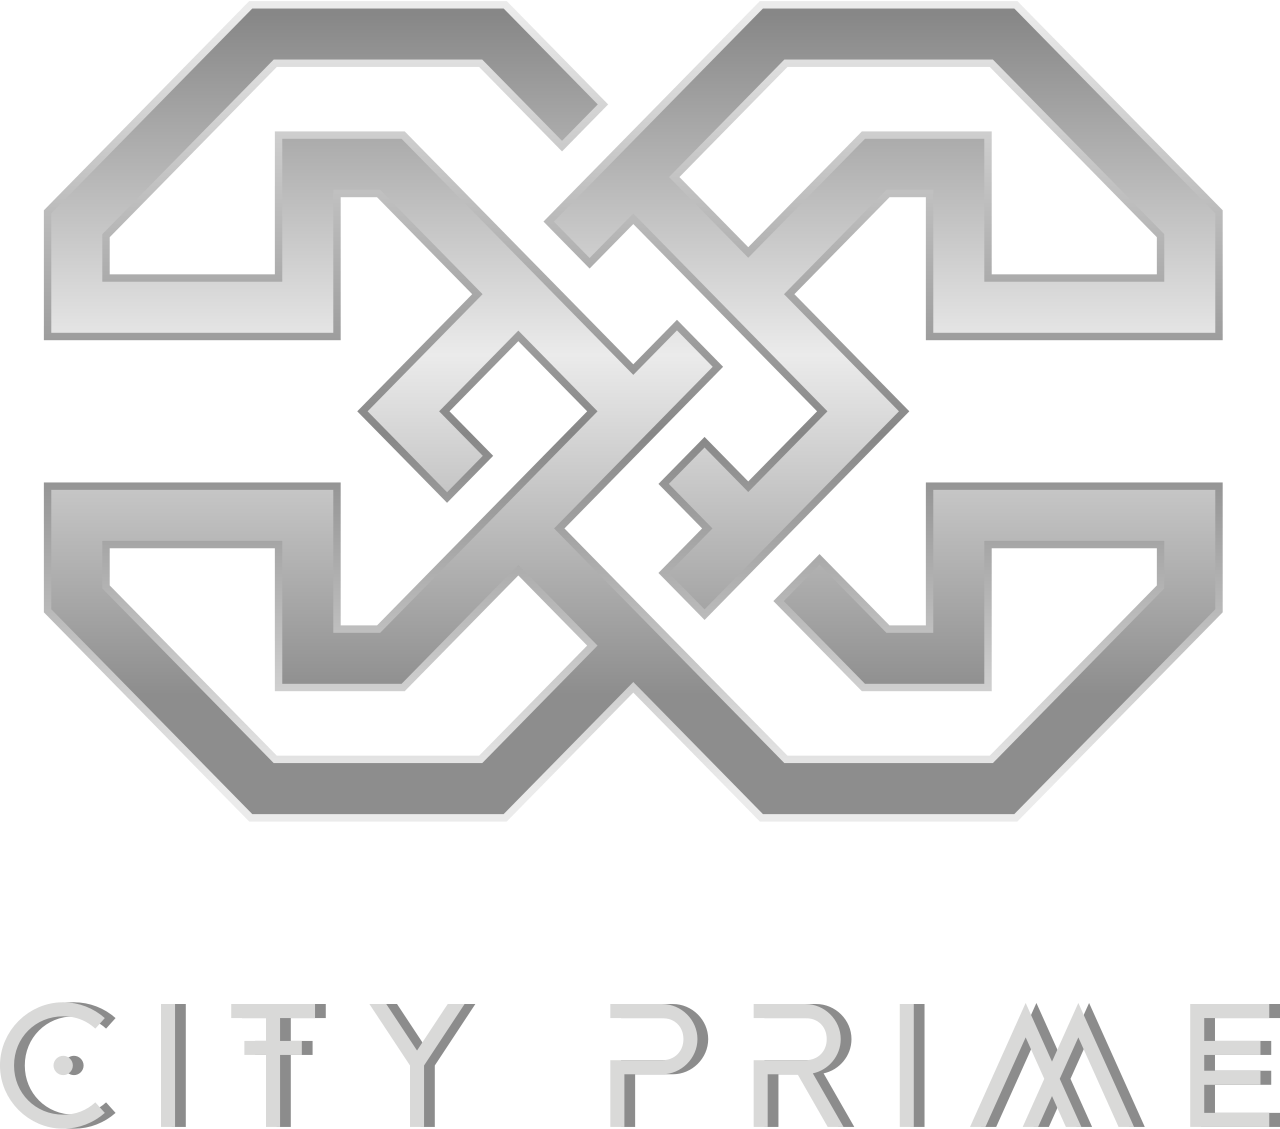 CITY PRIME's logo